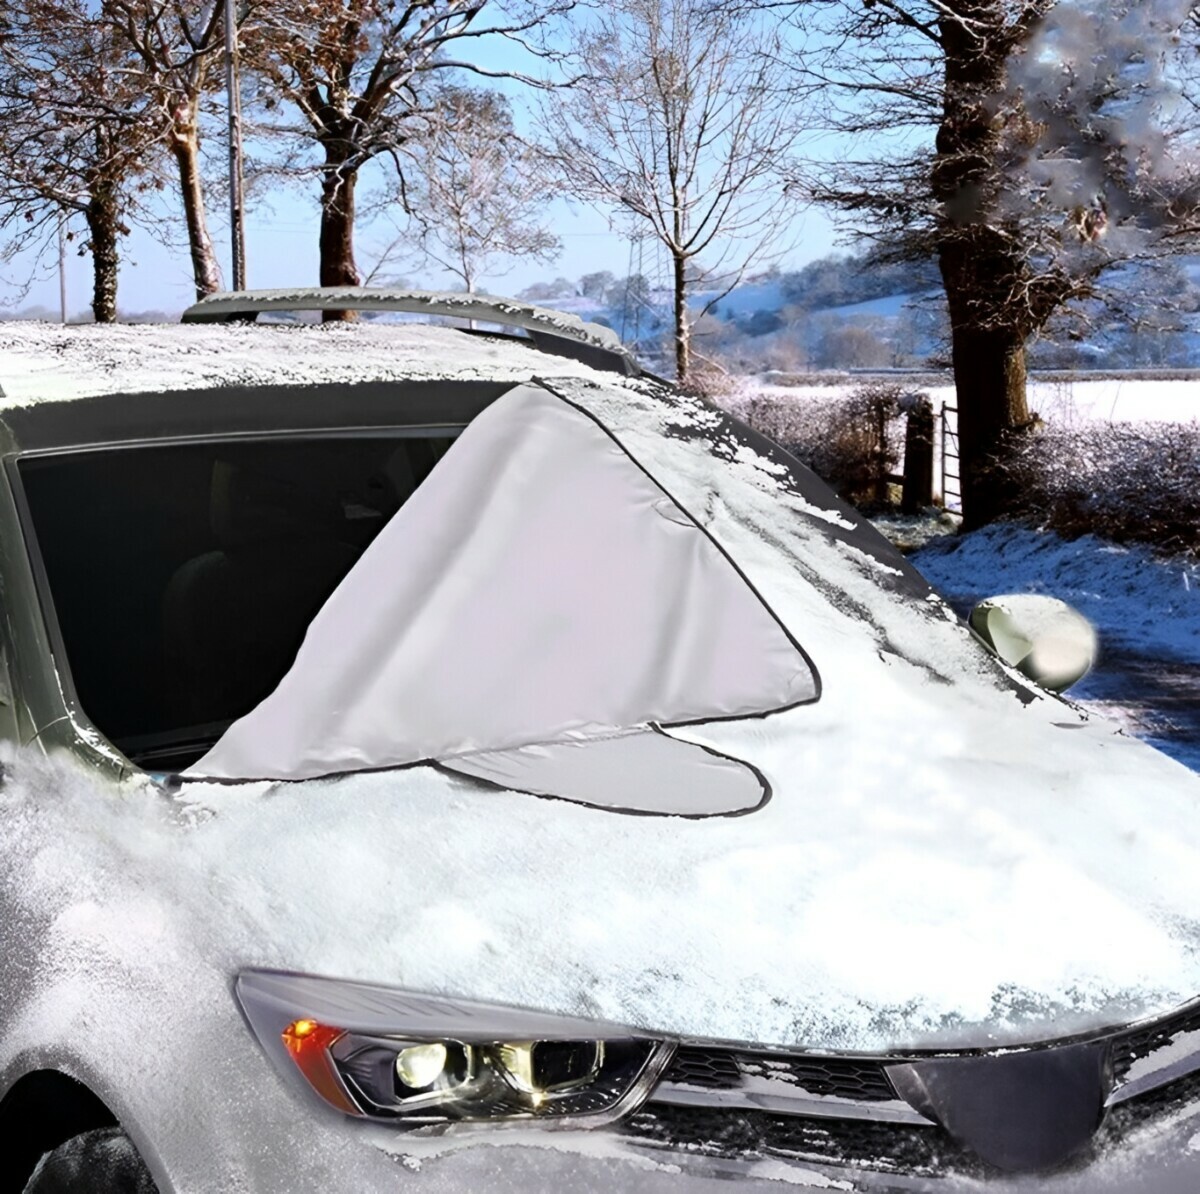 Эти "хитрости" помогут убрать снег с авто вместе со стеклом и краской. А как почистить правильно?